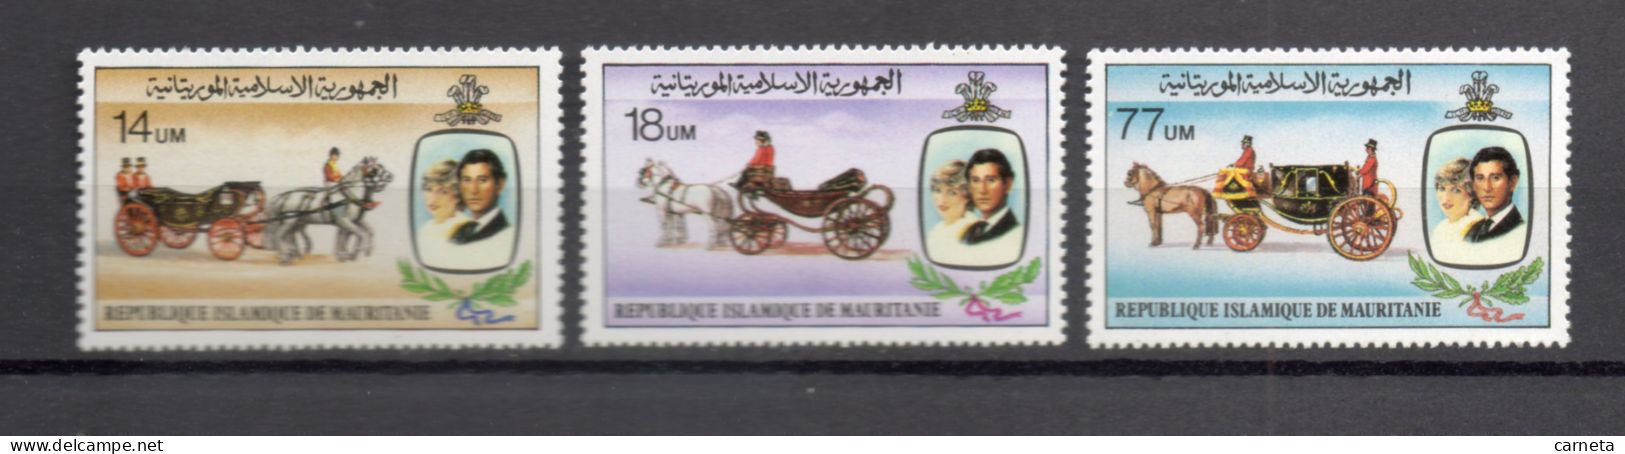 MAURITANIE  N° 477 à 479   NEUFS SANS CHARNIERE   COTE 6.00€   LADY DIANA PRINCE CHARLES - Mauritanie (1960-...)